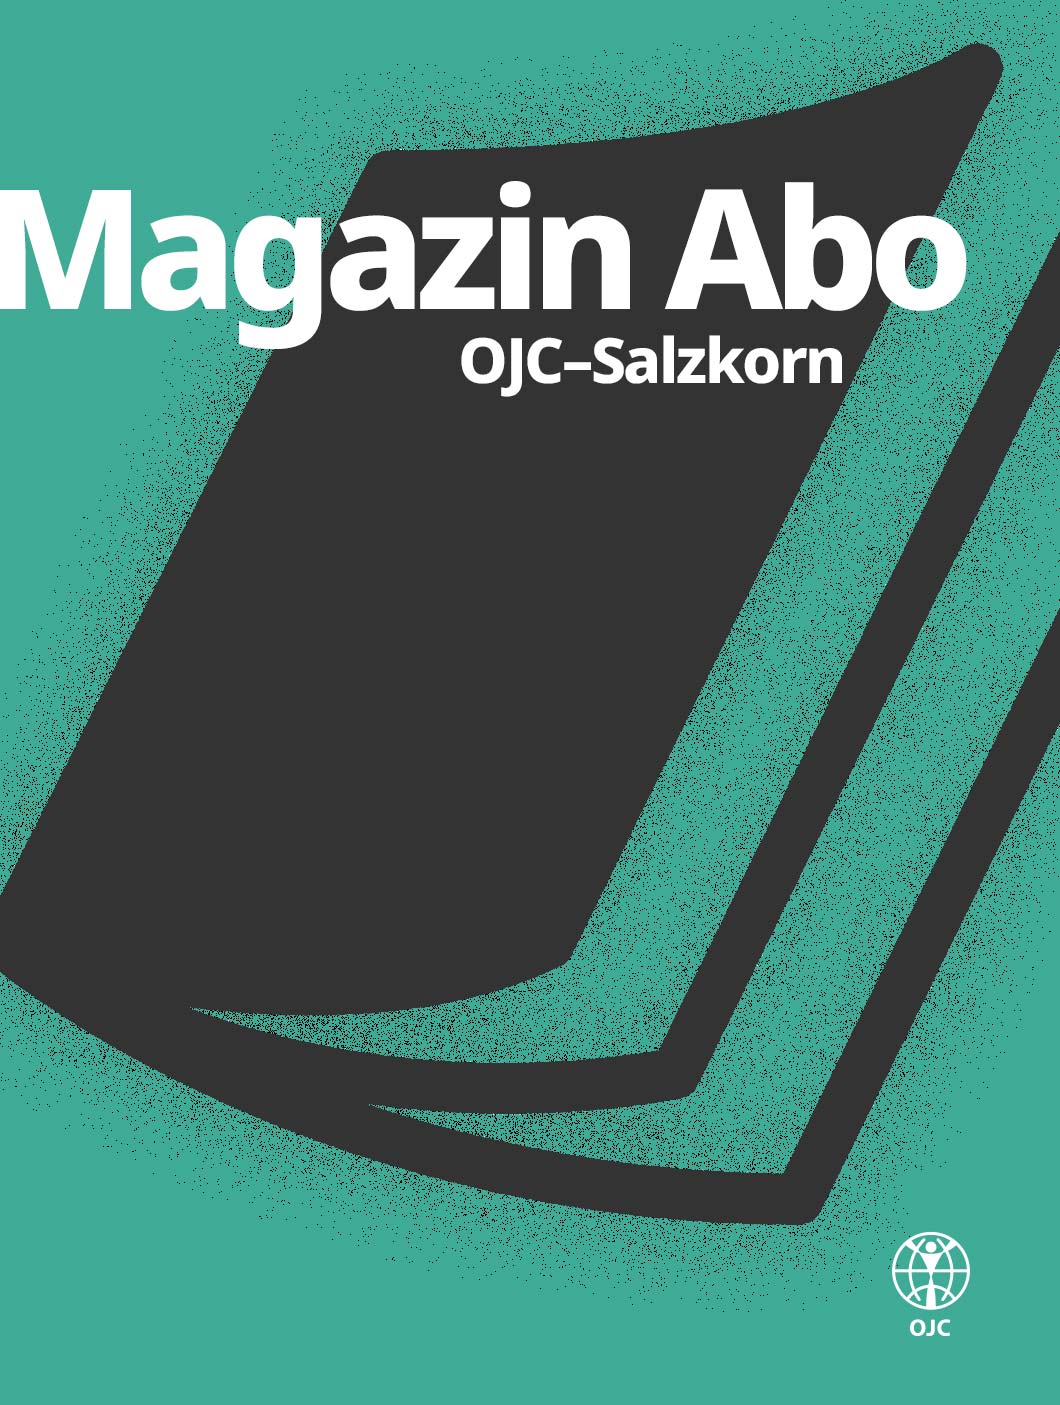 OJC-Greifswald: Magazin Abo für Salzkorn aus Reichelsheim